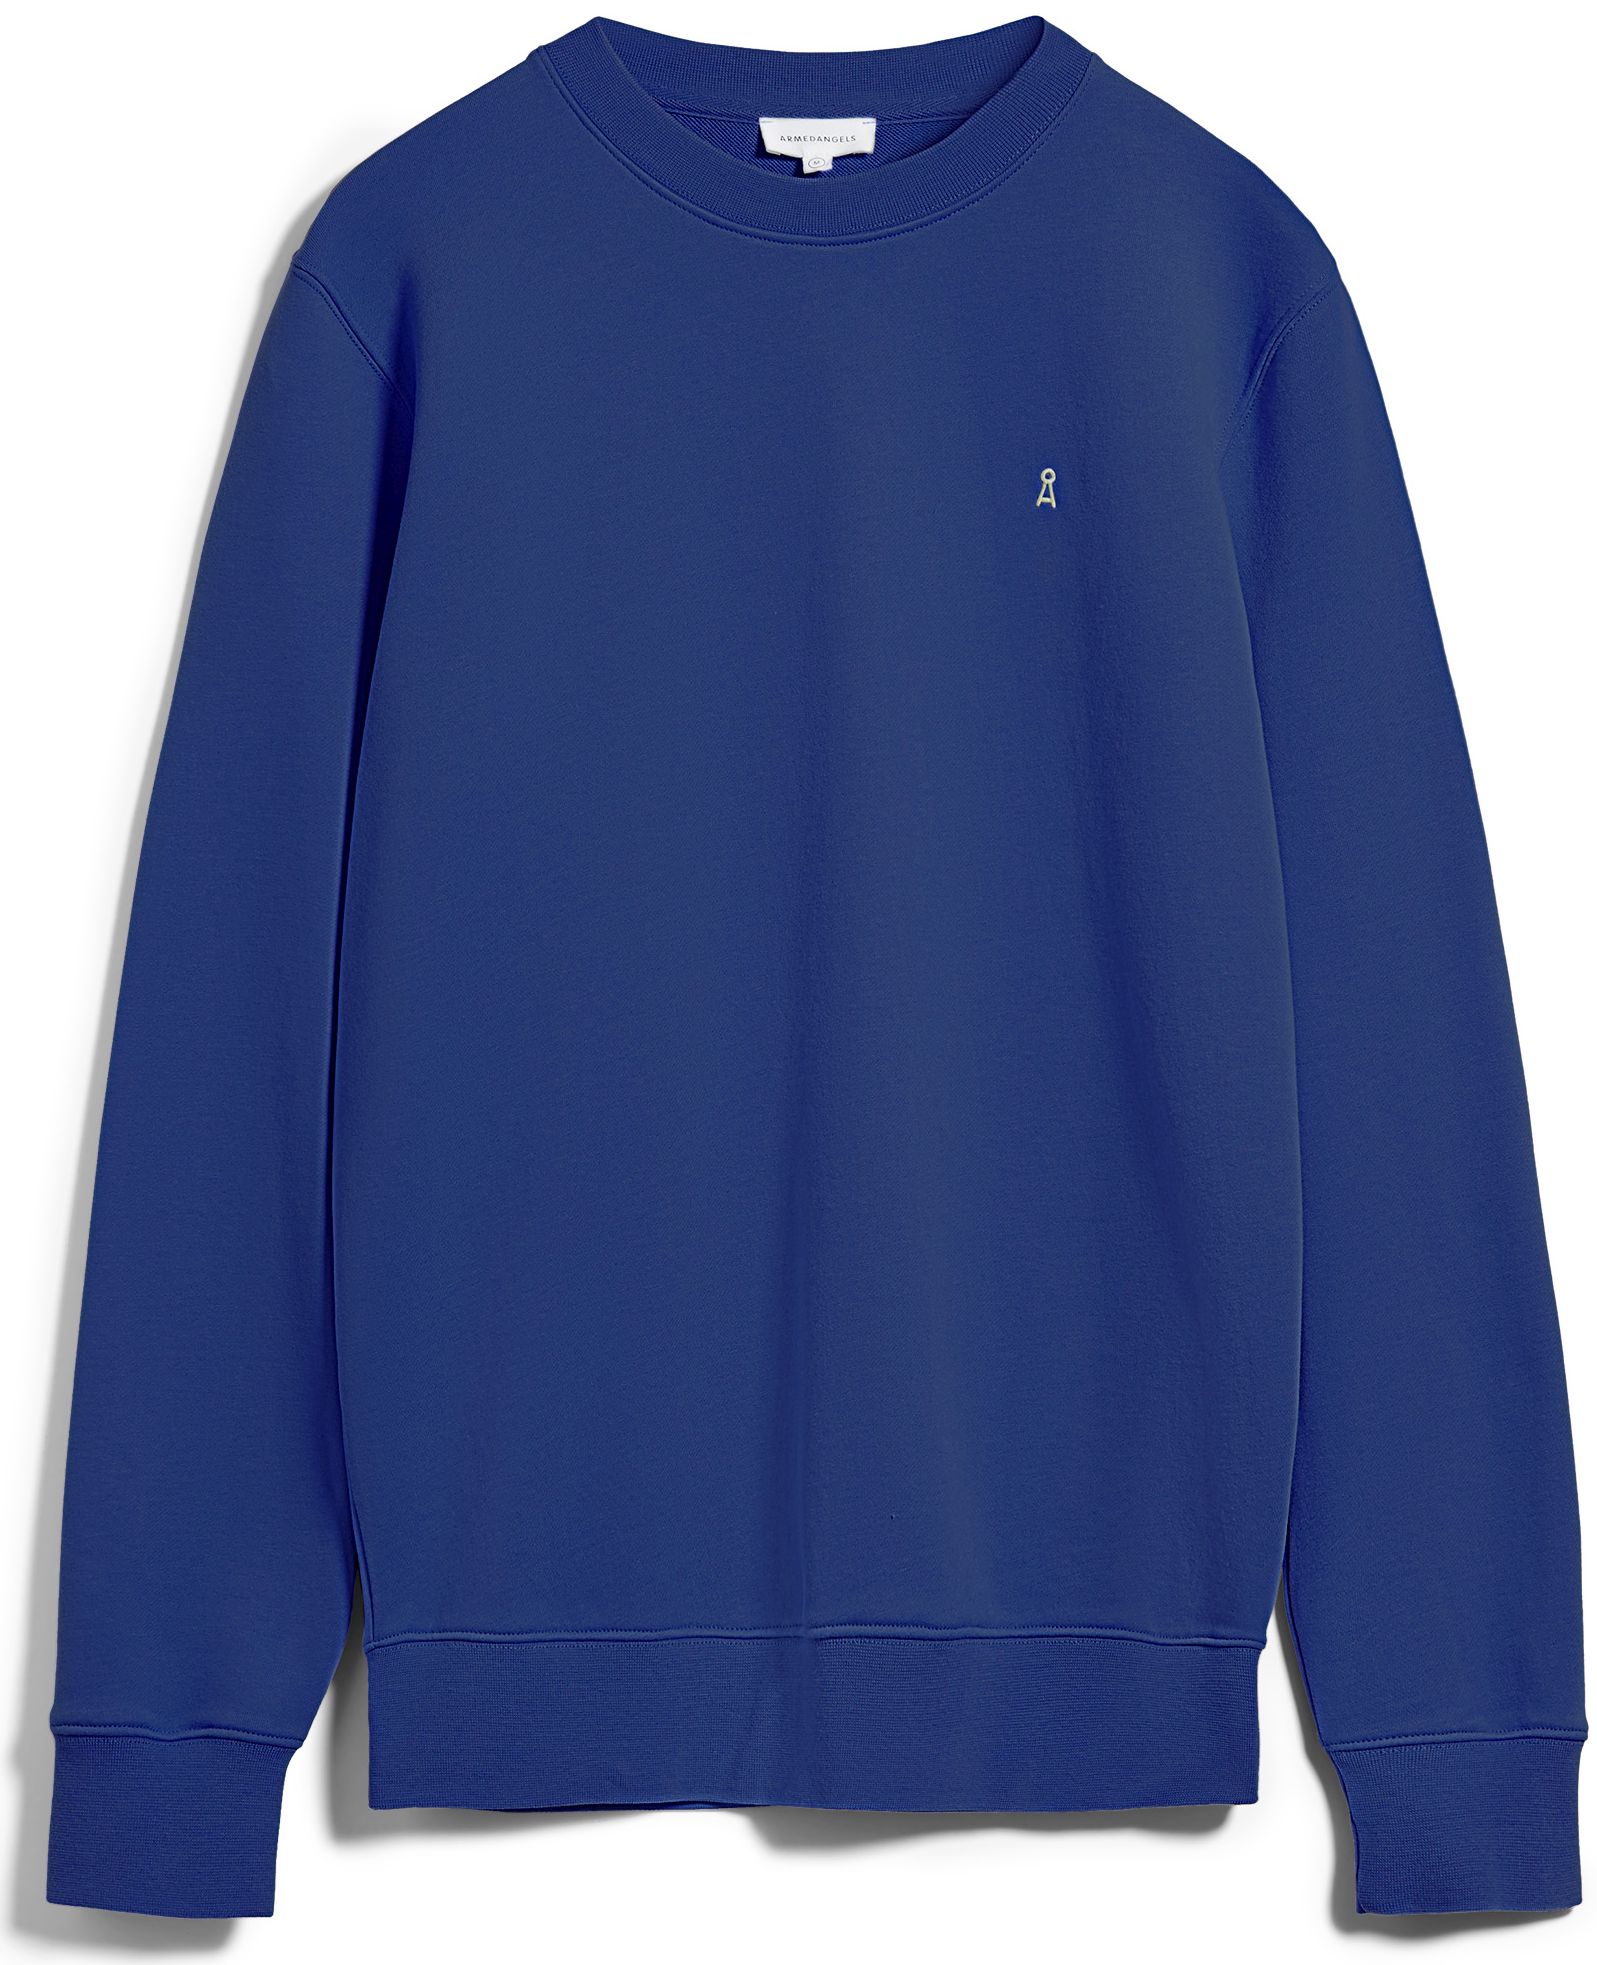 Herren-Sweatshirt MAALTE COMFORT marazine blue